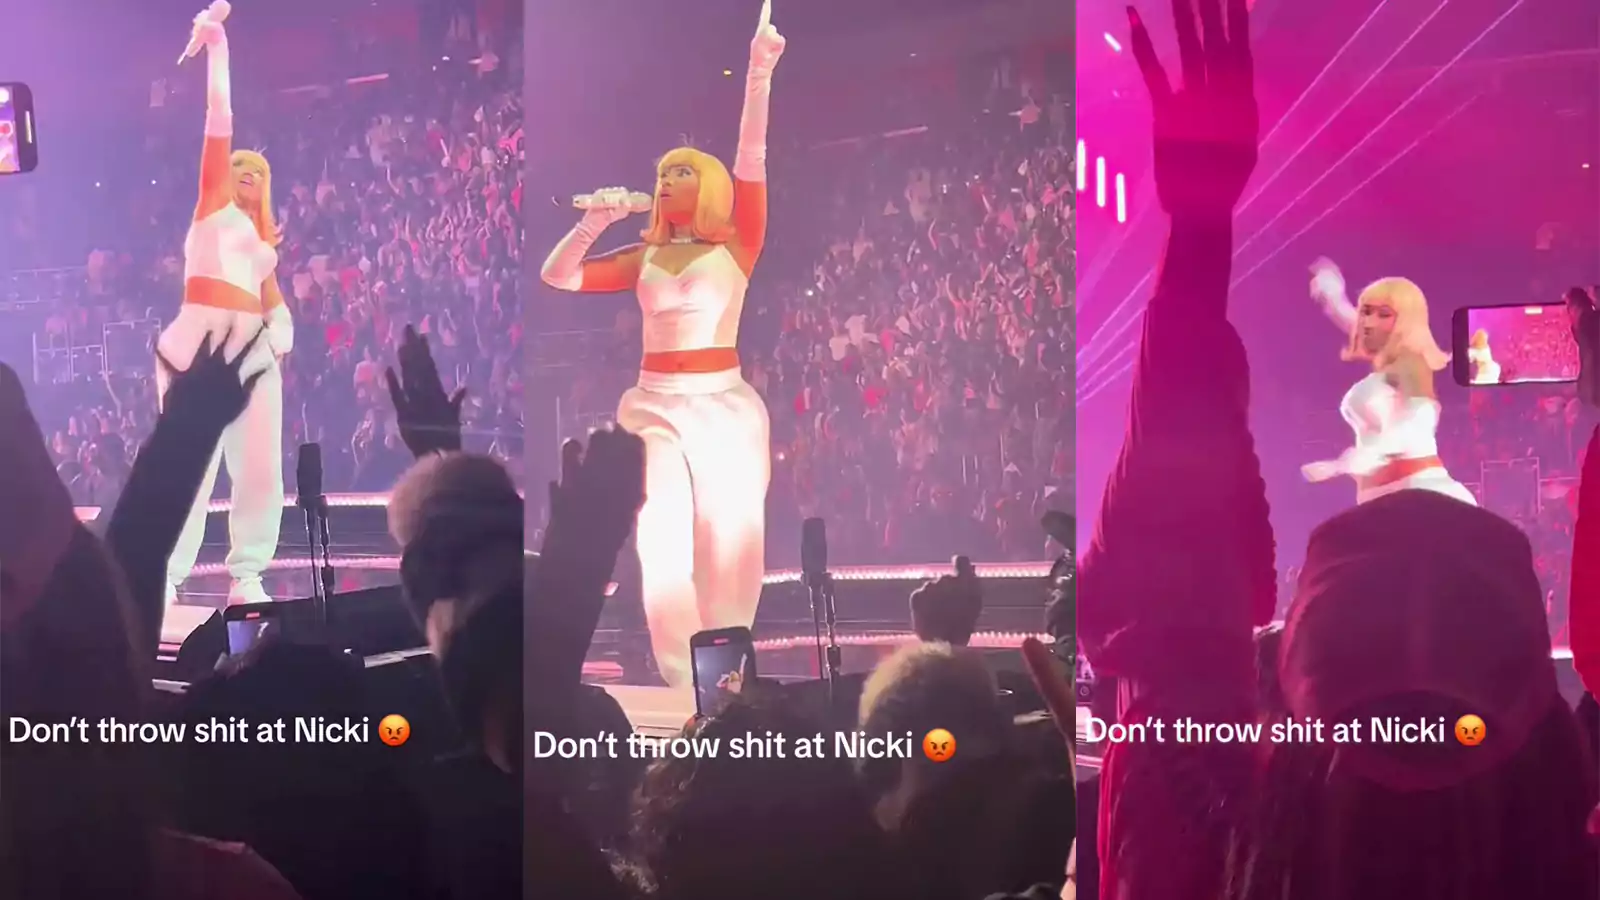 Vidéo : Nicki minaj s'attaque violemment à fan pendant son concert